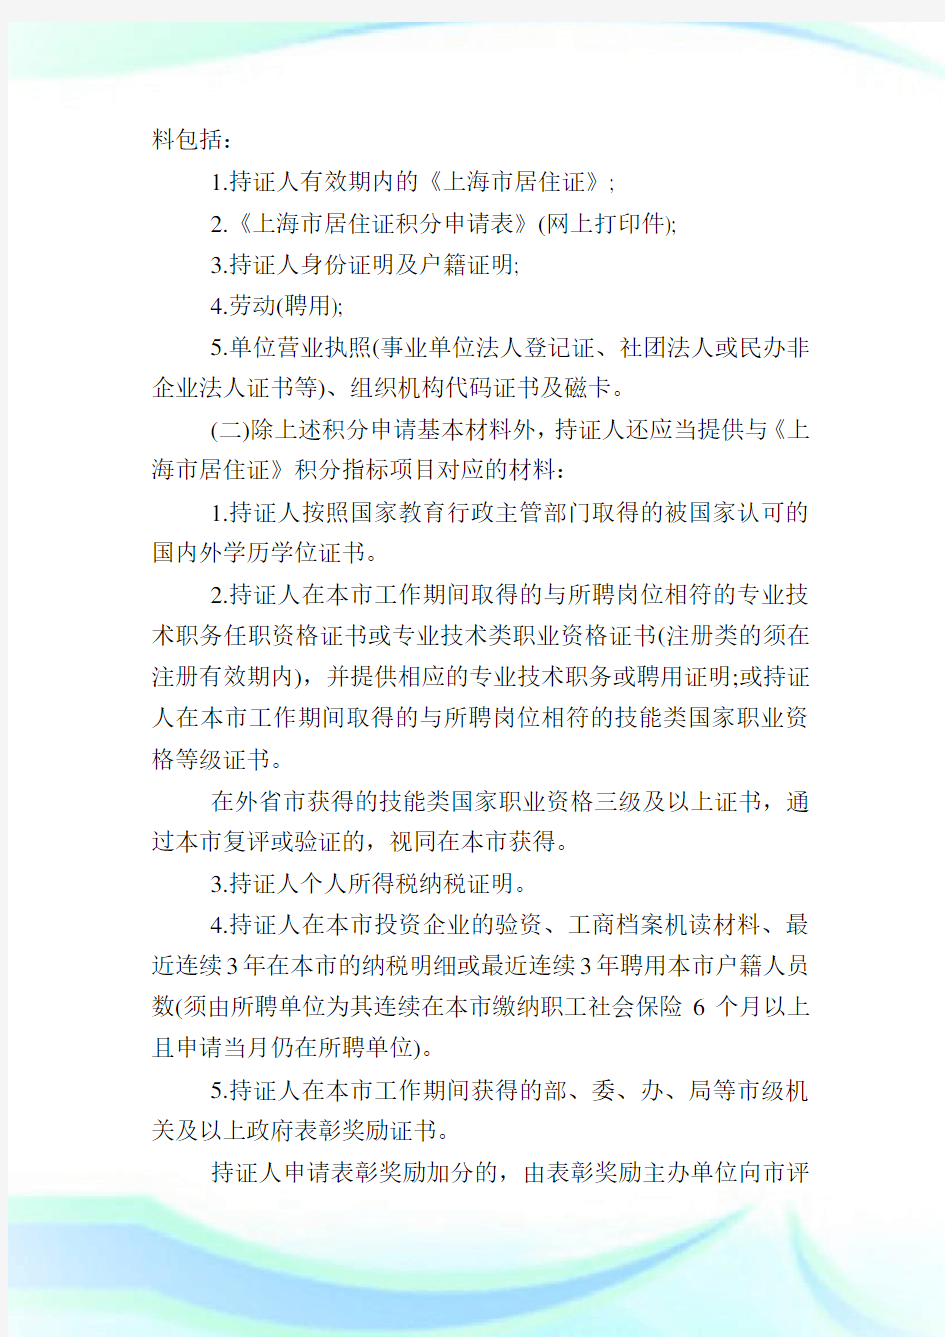 上海市居住证积分管理试行办法实施细则(全文).doc